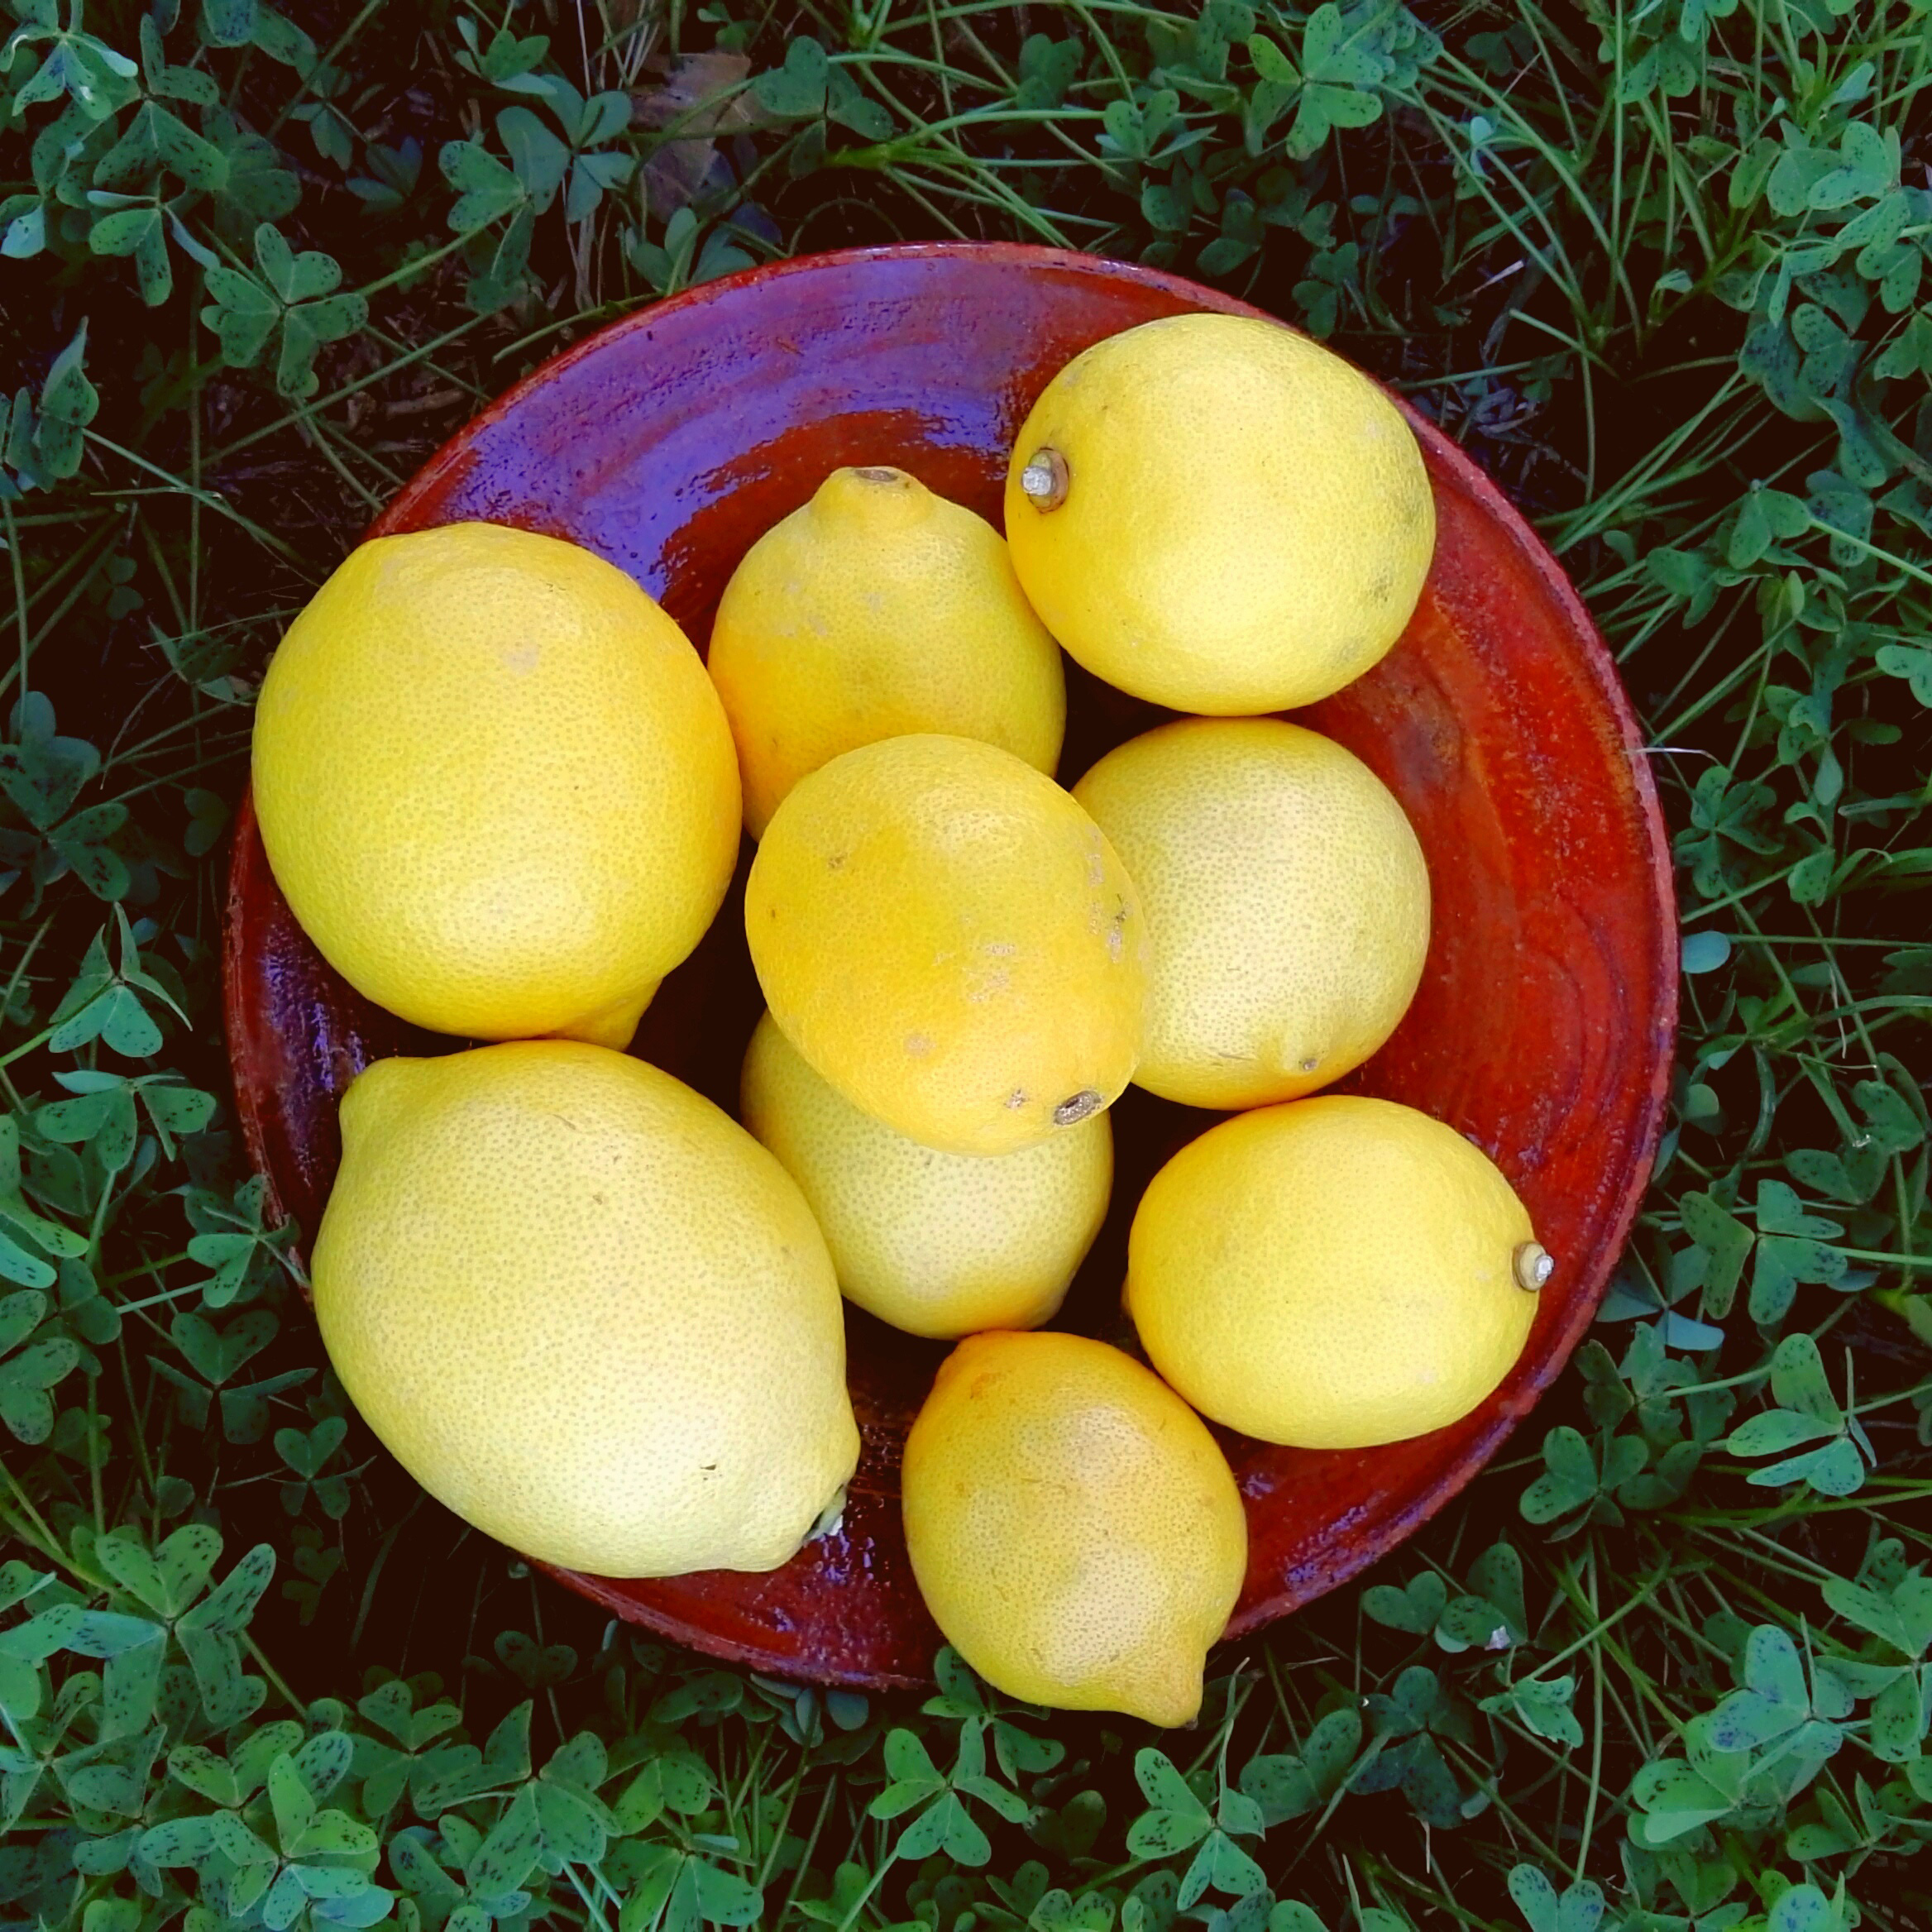 Citron Jaune, le Kilo